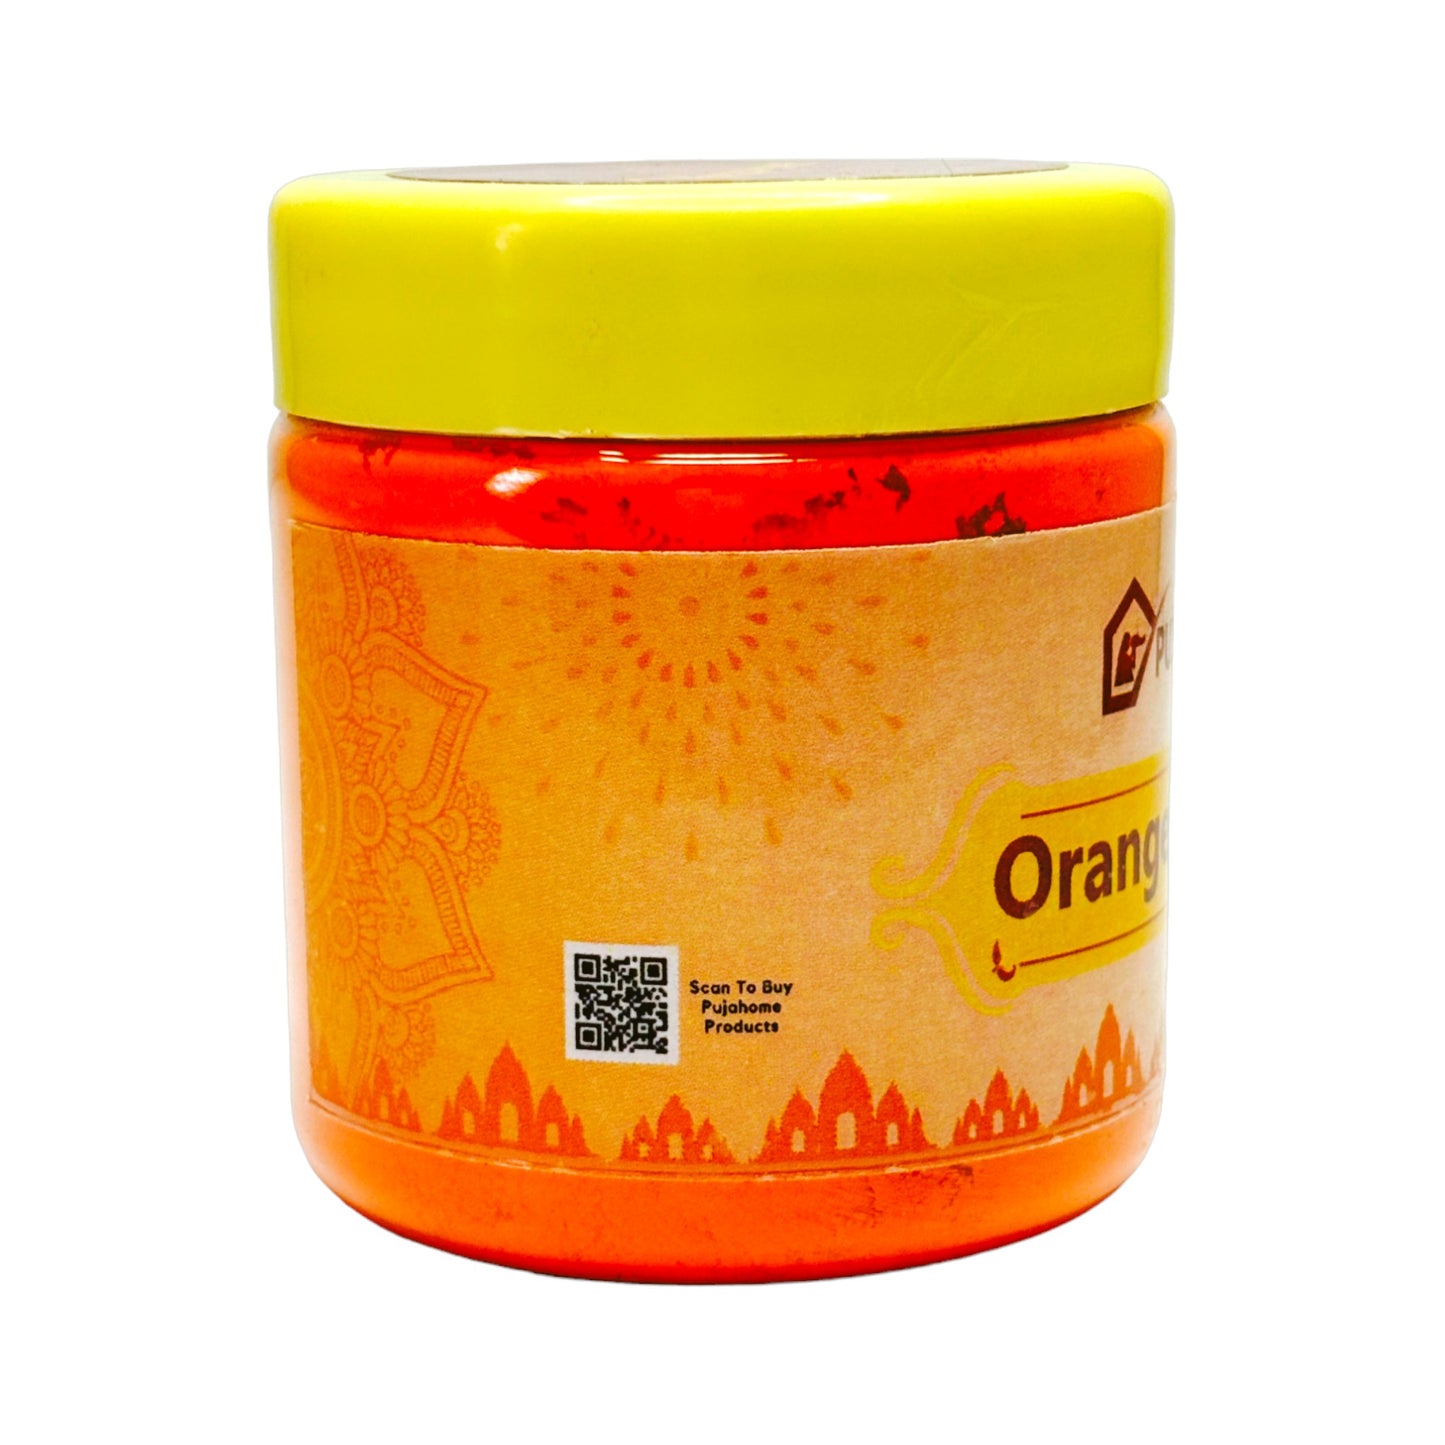 पूजाहोम मूल प्रीमियम गुणवत्ता हनुमान जी सिंदूर | 100% शुद्ध नारंगी सिंदूर (250 ग्राम)